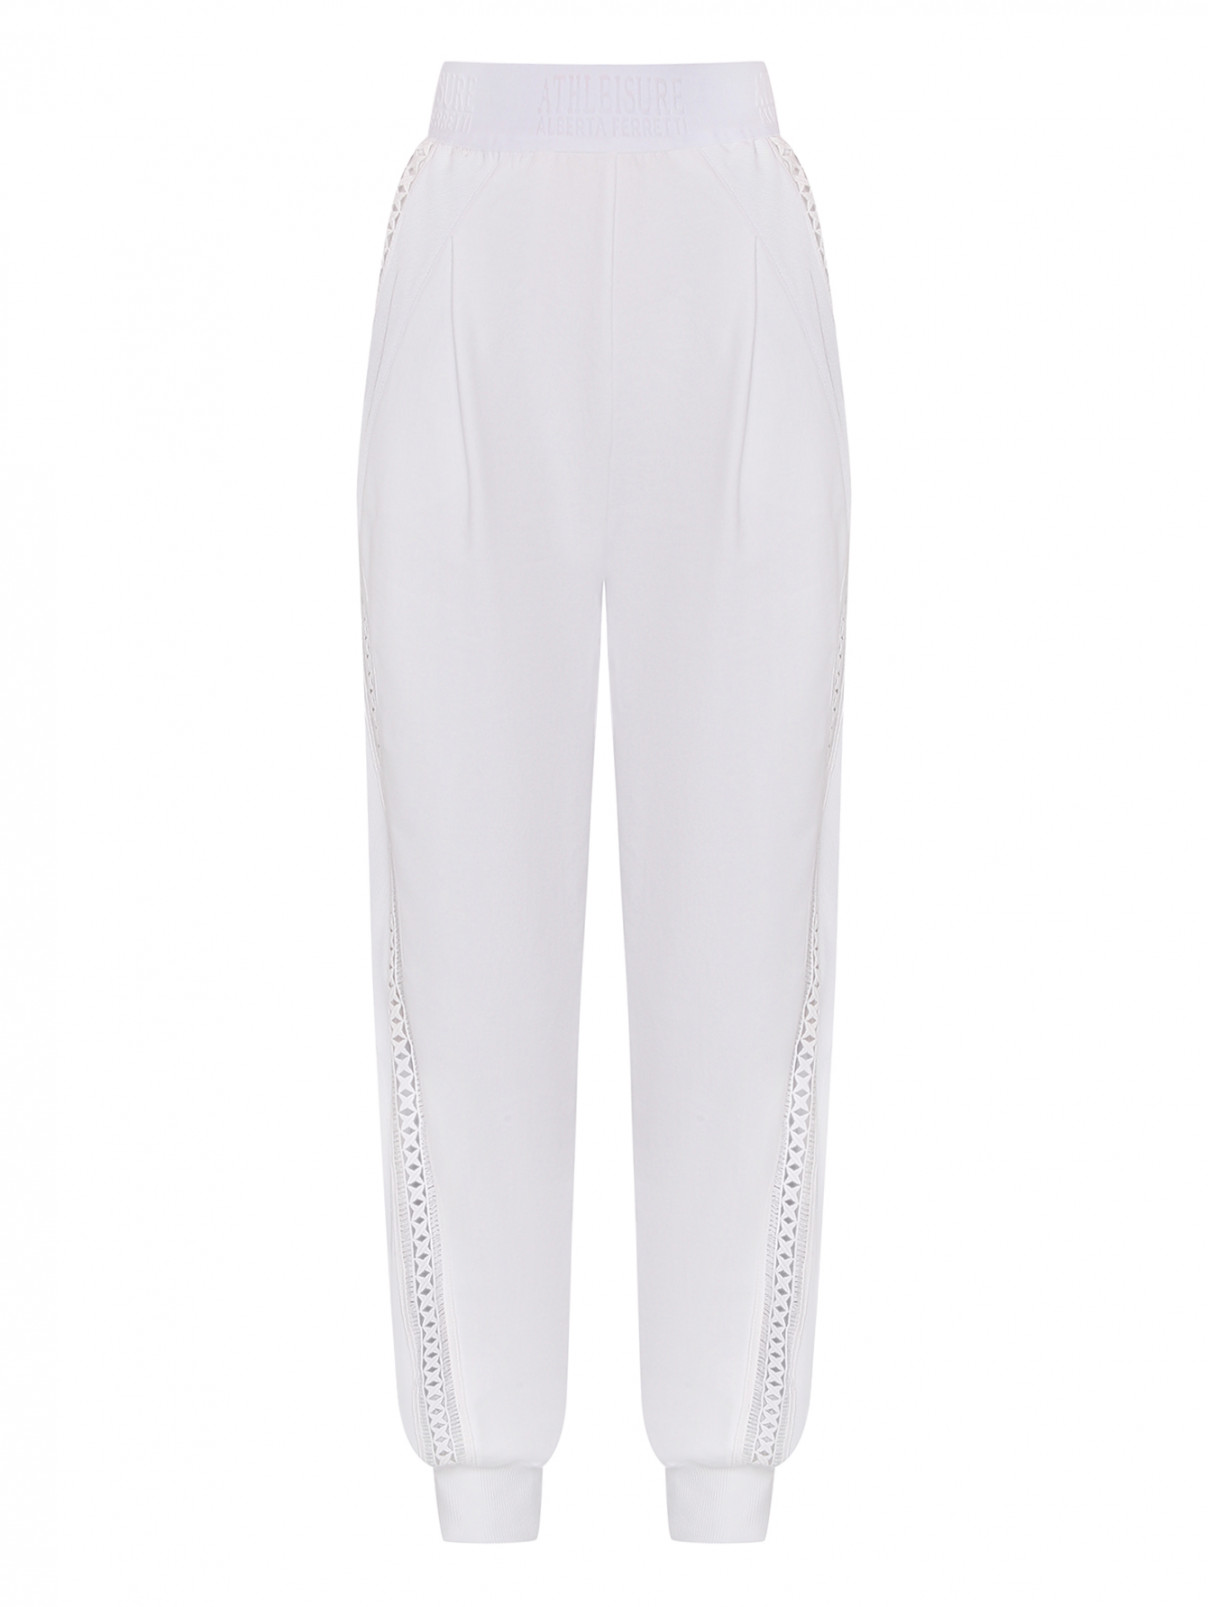 Трикотажные брюки из хлопка на резинке Alberta Ferretti  –  Общий вид  – Цвет:  Белый